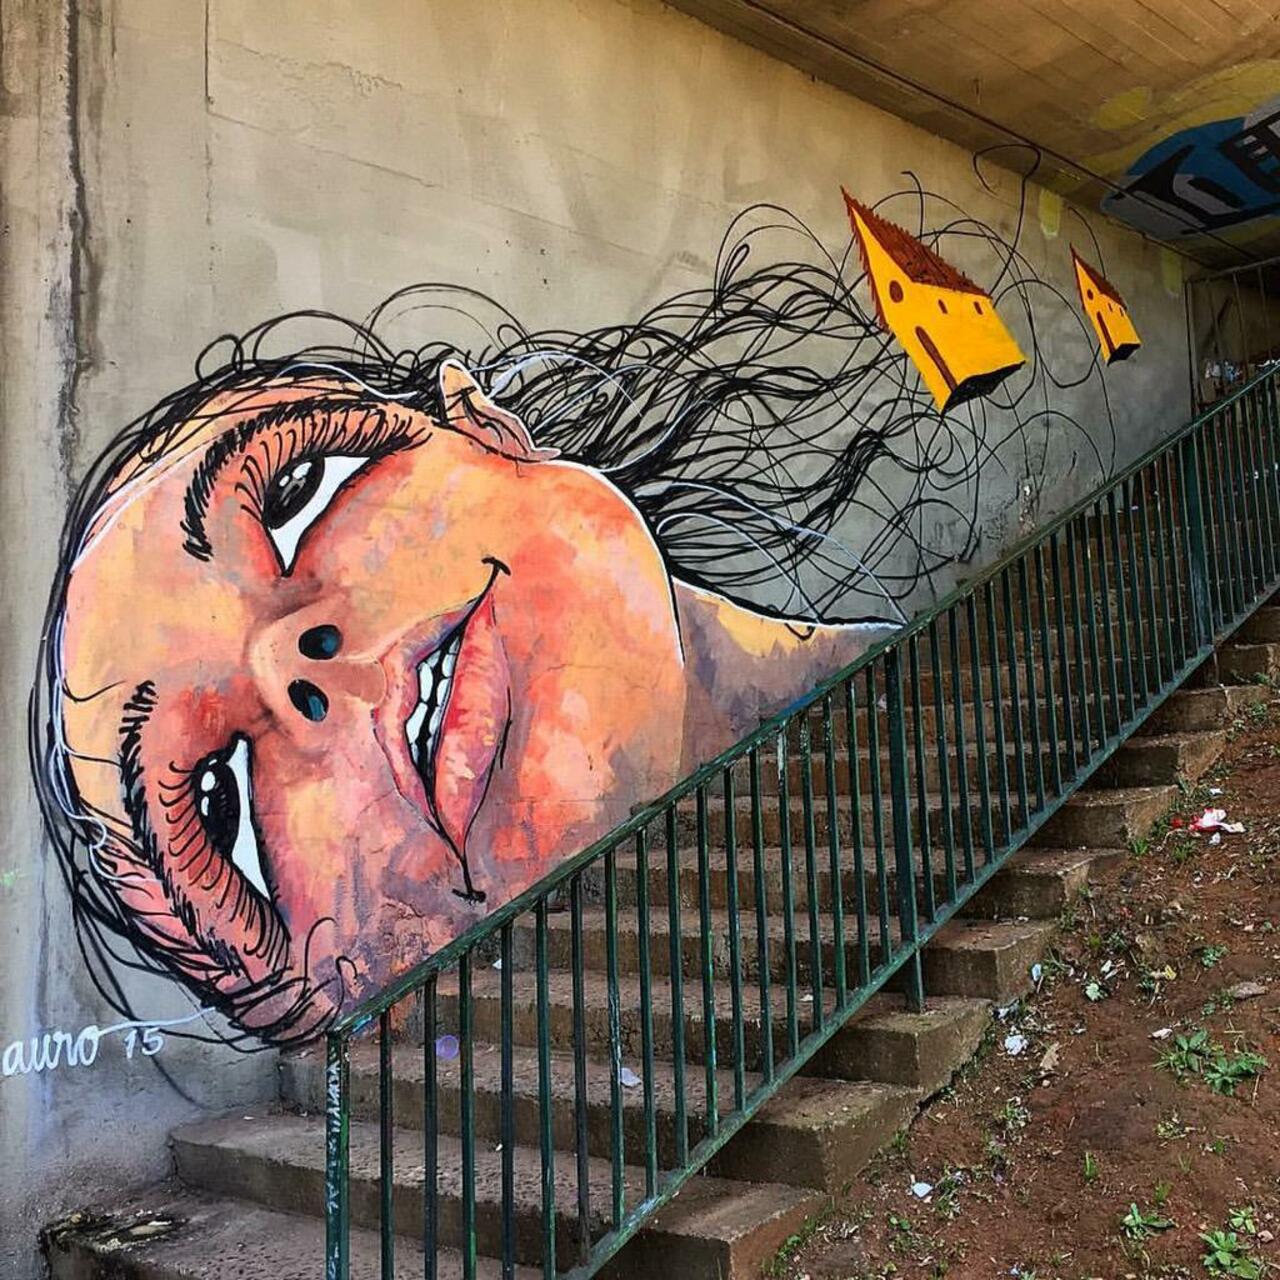 Street Art by Reveracidade in São Paulo 

#art #graffiti #mural #streetart http://t.co/VHnijP12s7